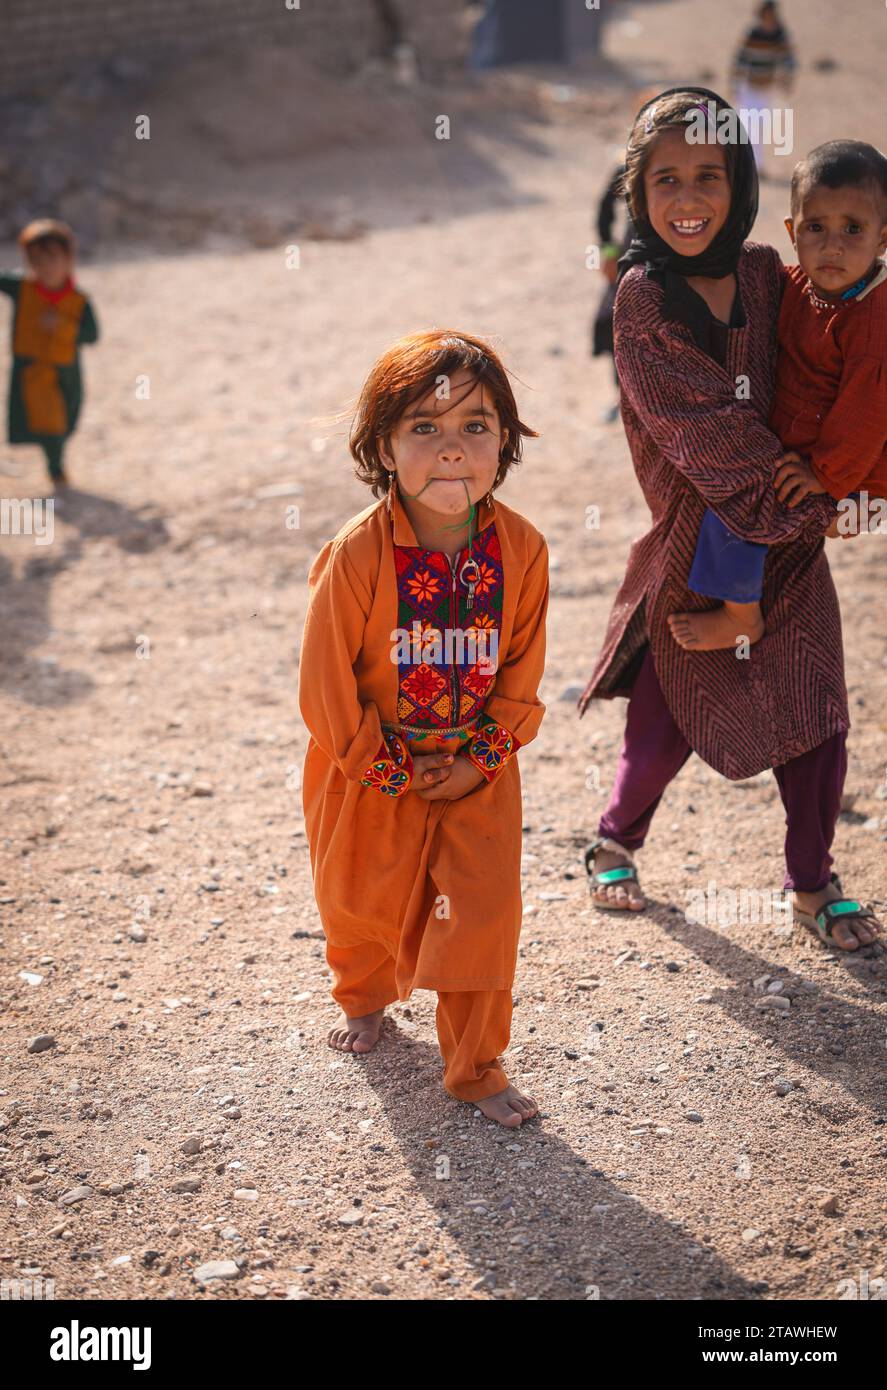 Fröhliches afghanisches Mädchen mit traditionellem Outfit, lächelnd und in die Kamera schauend. Stockfoto